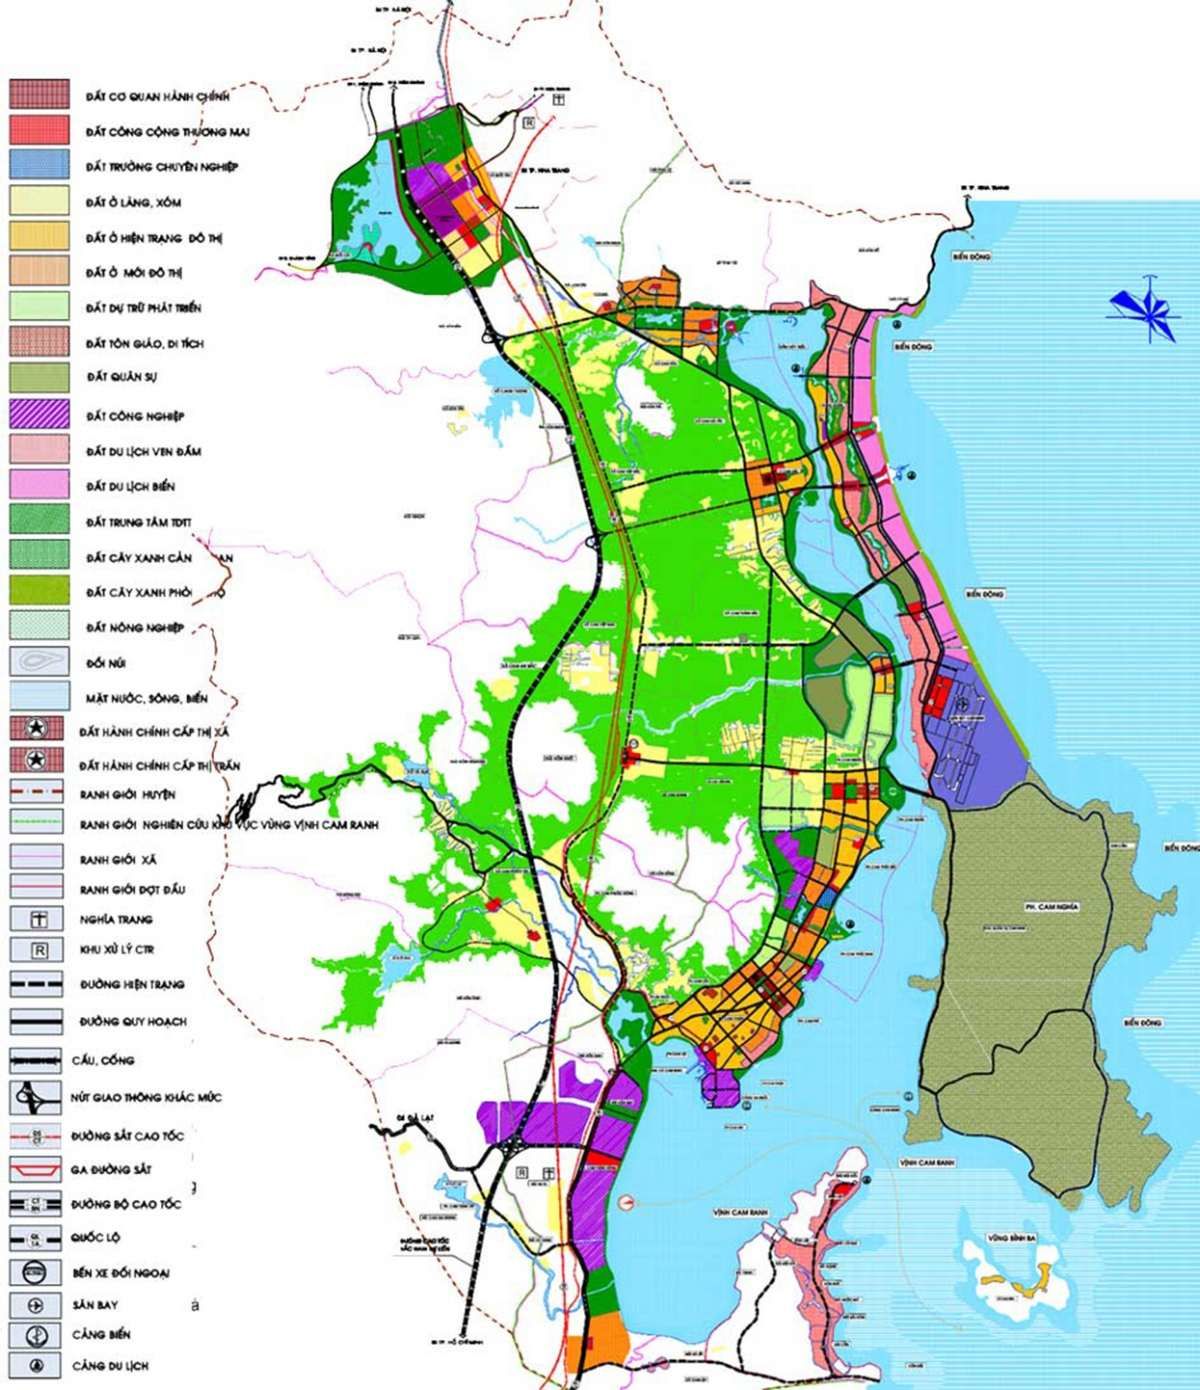 Quy hoạch tỉnh Khánh Hòa: Với sự quan tâm và đầu tư của chính quyền và các đối tác, quy hoạch tỉnh Khánh Hòa đang được cập nhật và hoàn thiện hơn bao giờ hết. Các dự án hạ tầng và du lịch sẽ mở ra nhiều cơ hội mới cho kinh tế và đời sống của người dân địa phương.